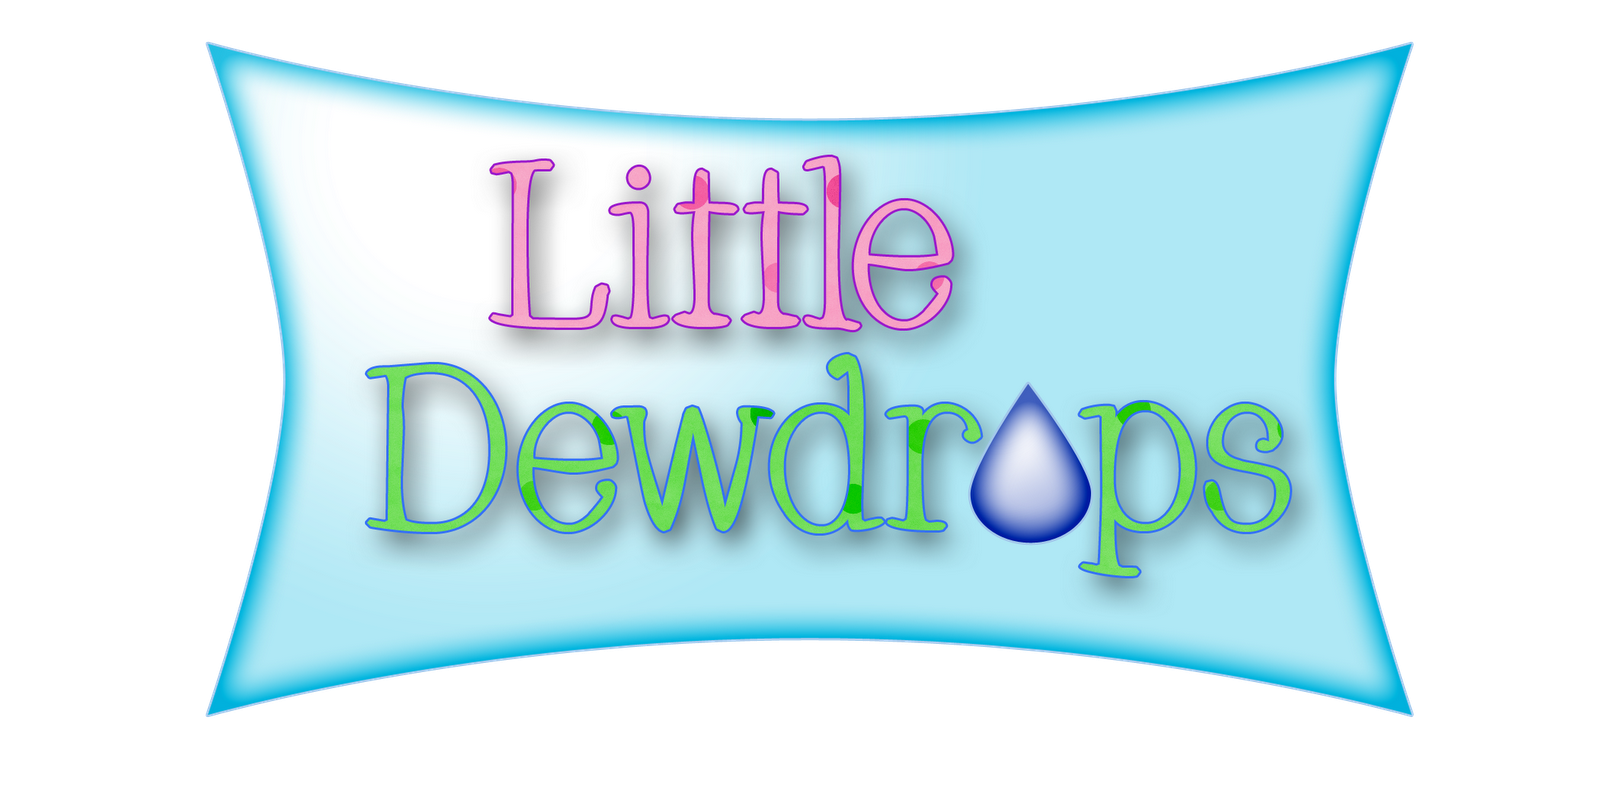 Little Dewdrops